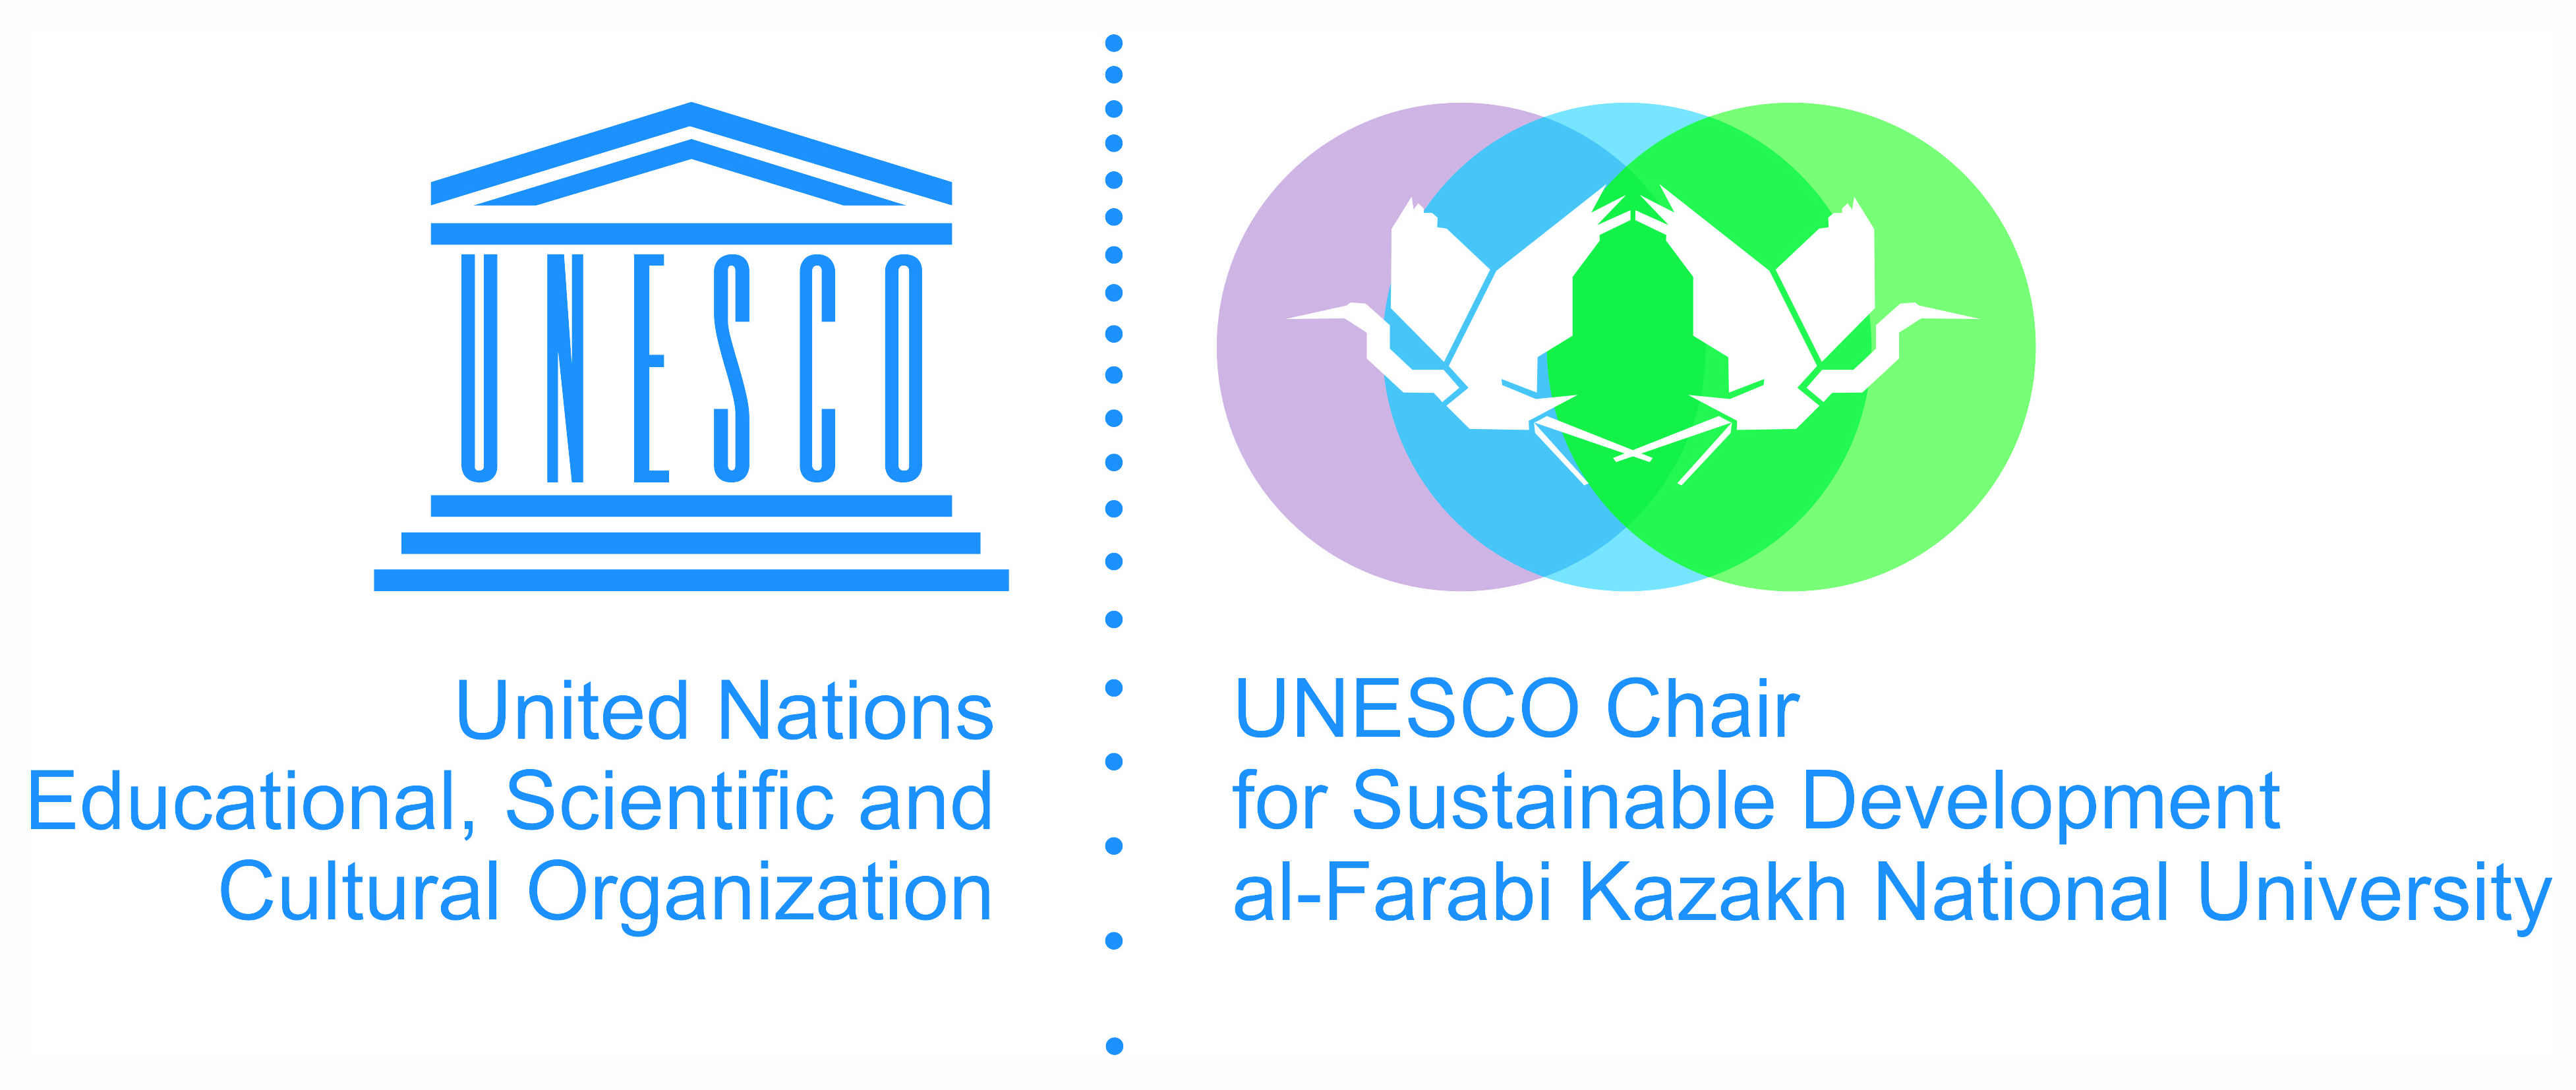 Официальное открытие кафедры ЮНЕСКО по устойчивому развитию